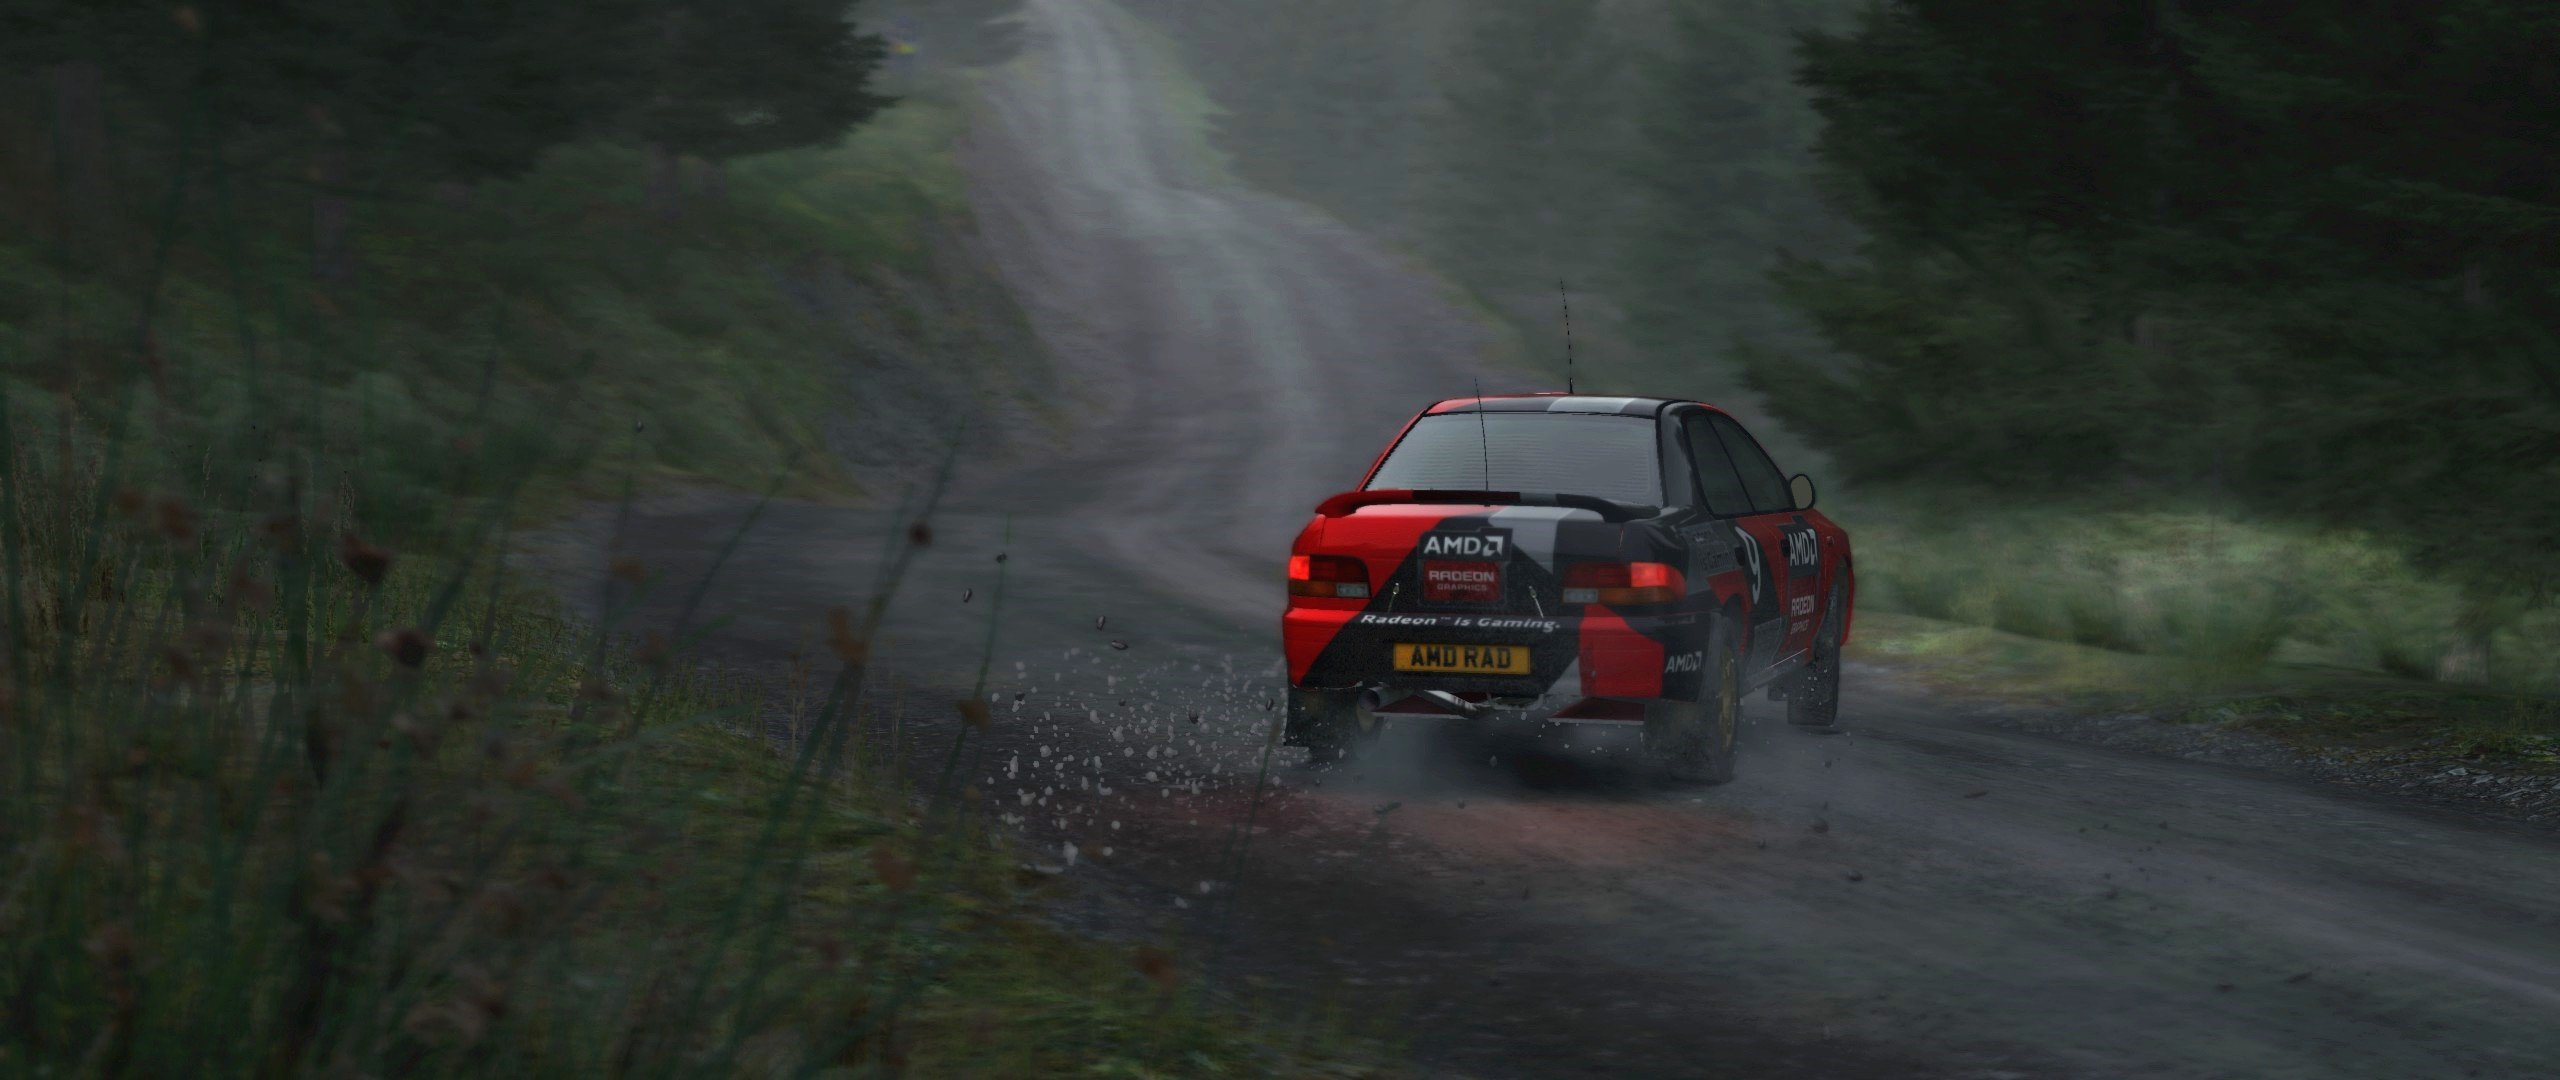 DiRT Rally, AMD, Subaru Wallpaper